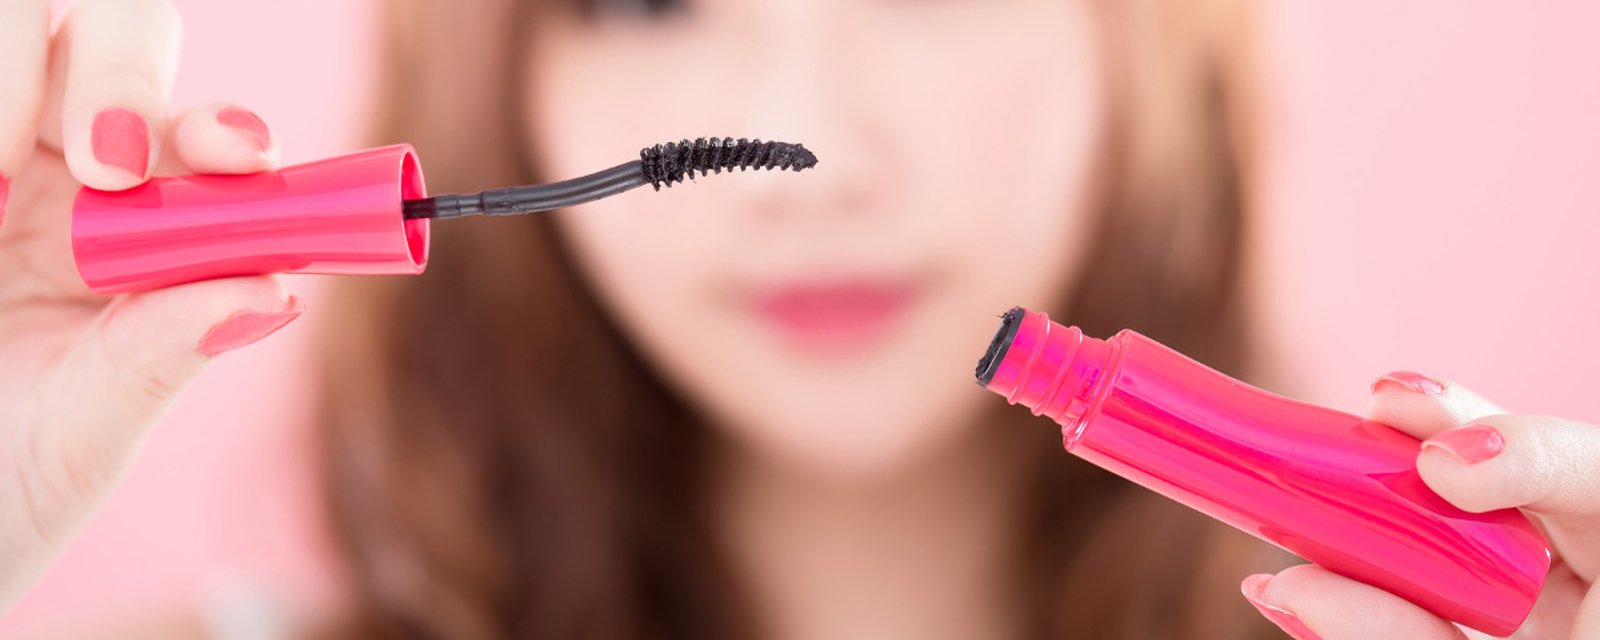 8 surprenantes façons d'utiliser une brosse à mascara